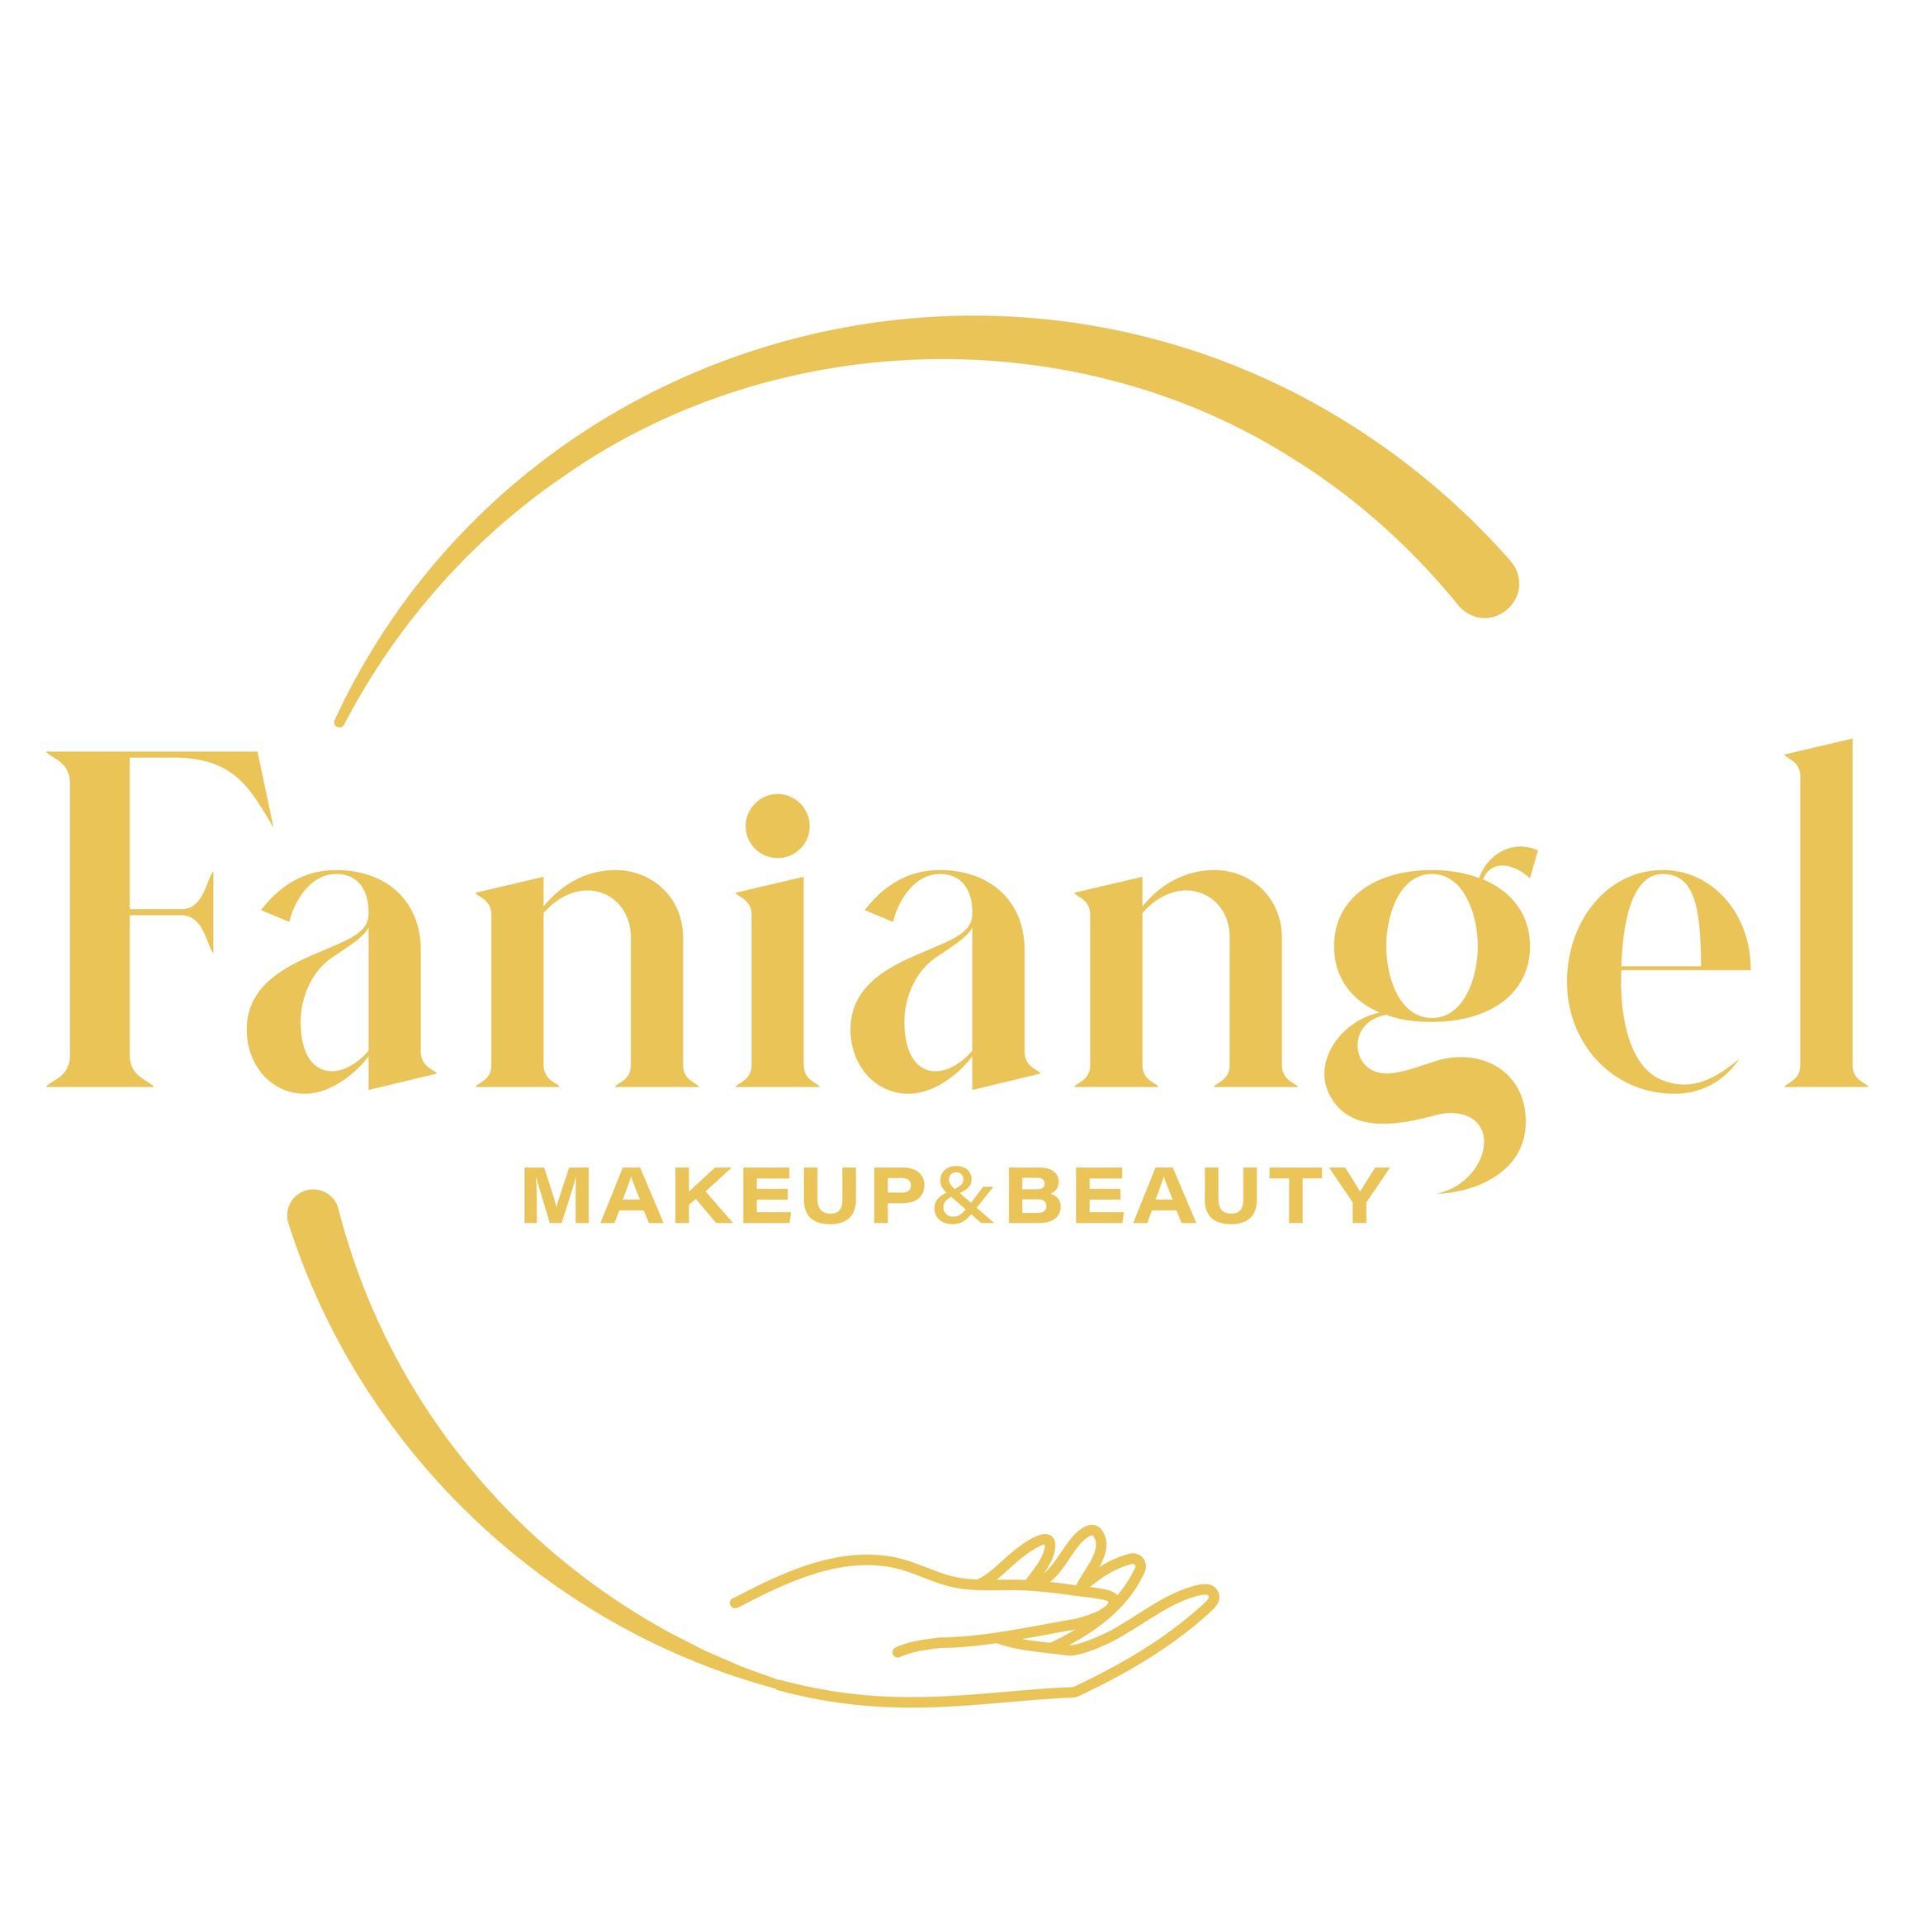 Faniangel makeup beauty, 4550 Kittredge St., Apt 2-205, Denver, 80238